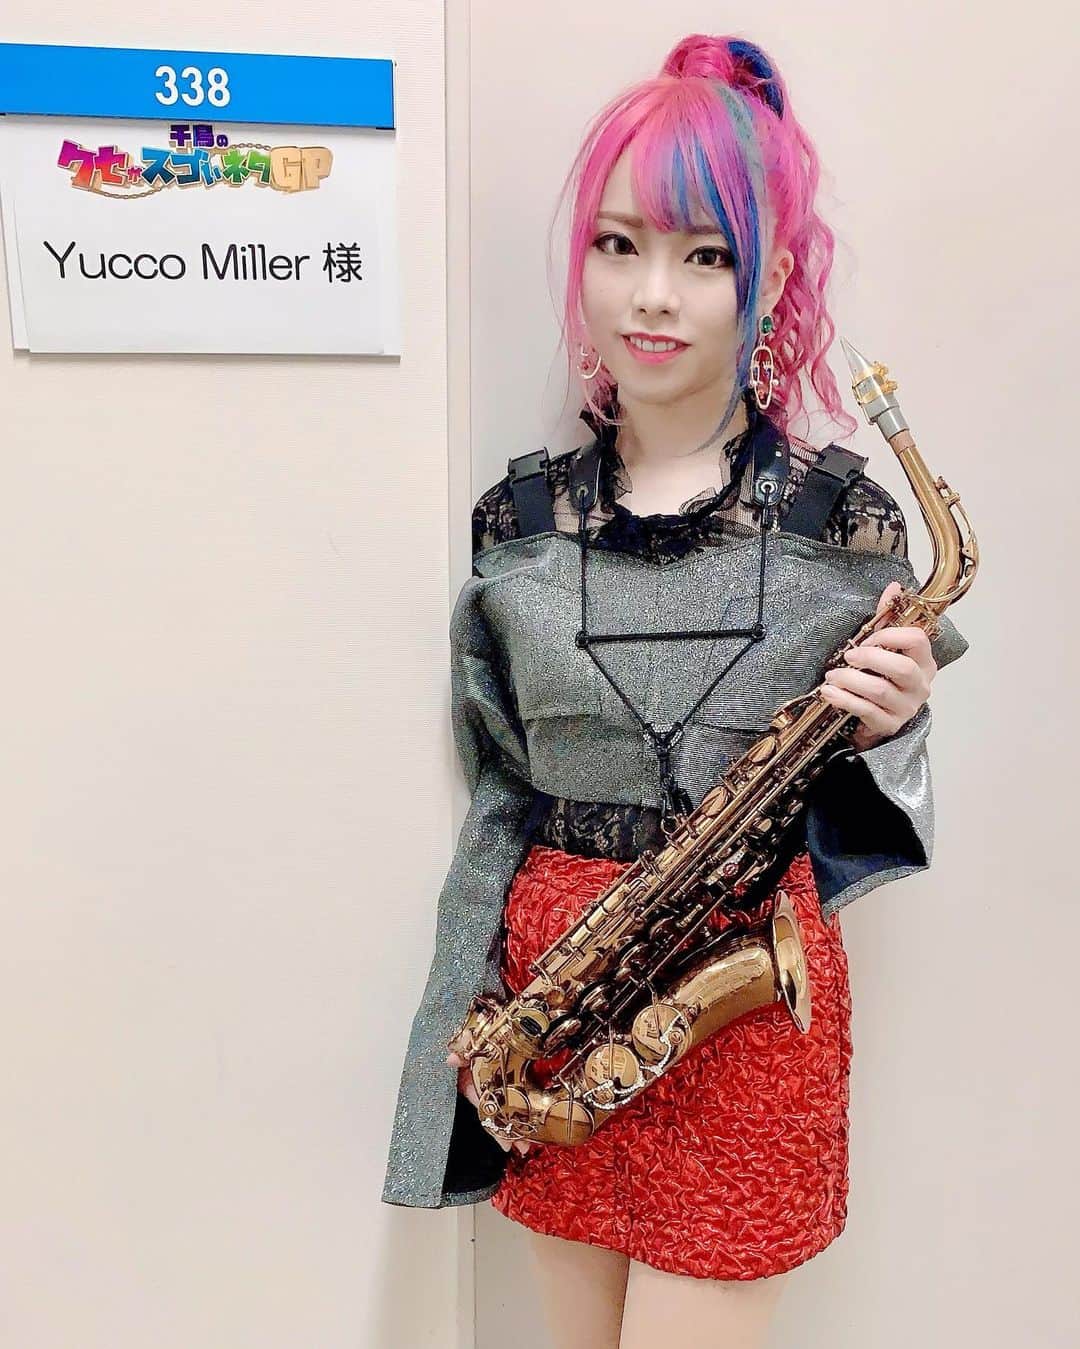 ユッコ・ミラーのインスタグラム：「【テレビ出演《全国放送》】 フジテレビ「千鳥のクセがスゴいネタGP」にユッコ・ミラーが出演します💗 2月25日(木)21:00〜21:54全国放送 一体どんなことになってしまうのか‼️ お楽しみに🤣✨✨✨ ・ #千鳥のクセがスゴいネタgp  #フジテレビ #ユッコミラー #サックス #yuccomiller #유코밀러 #saxophone #sax #saxophoneplayer  #saxophonist #색소폰 #femalesaxophonist  #femalesaxplayer  #jazz #YouTube #YouTuber #pinkhair」